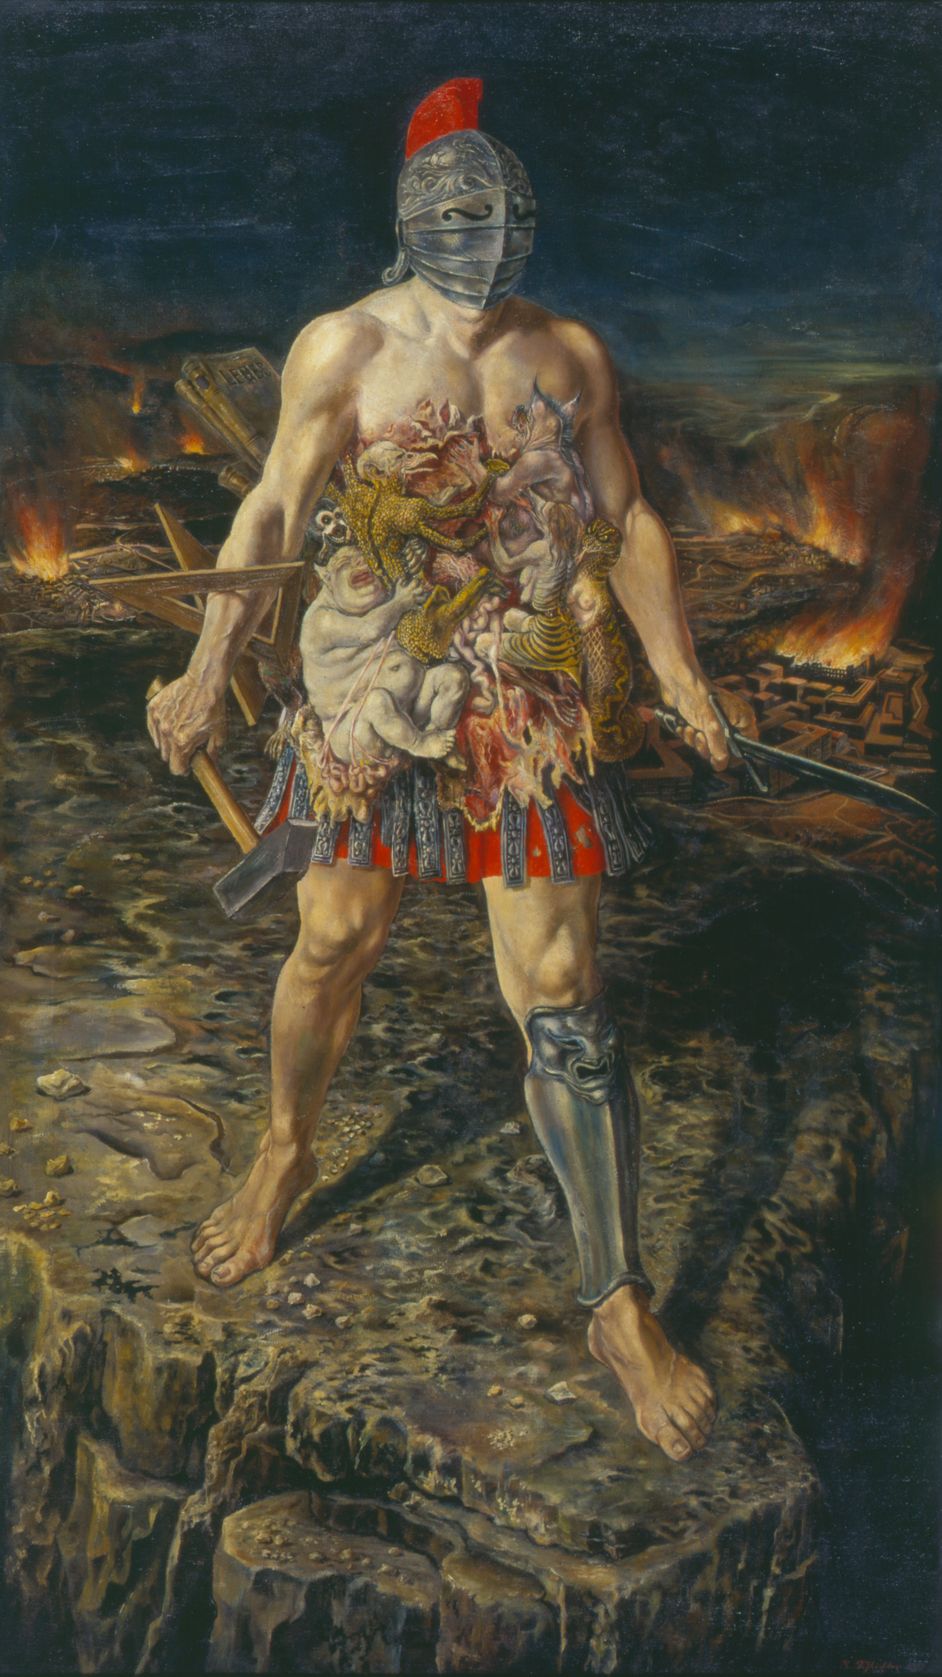 Gemälde von Rudolf Schlichter, Öl auf Leinwand, 179 x 100 cm